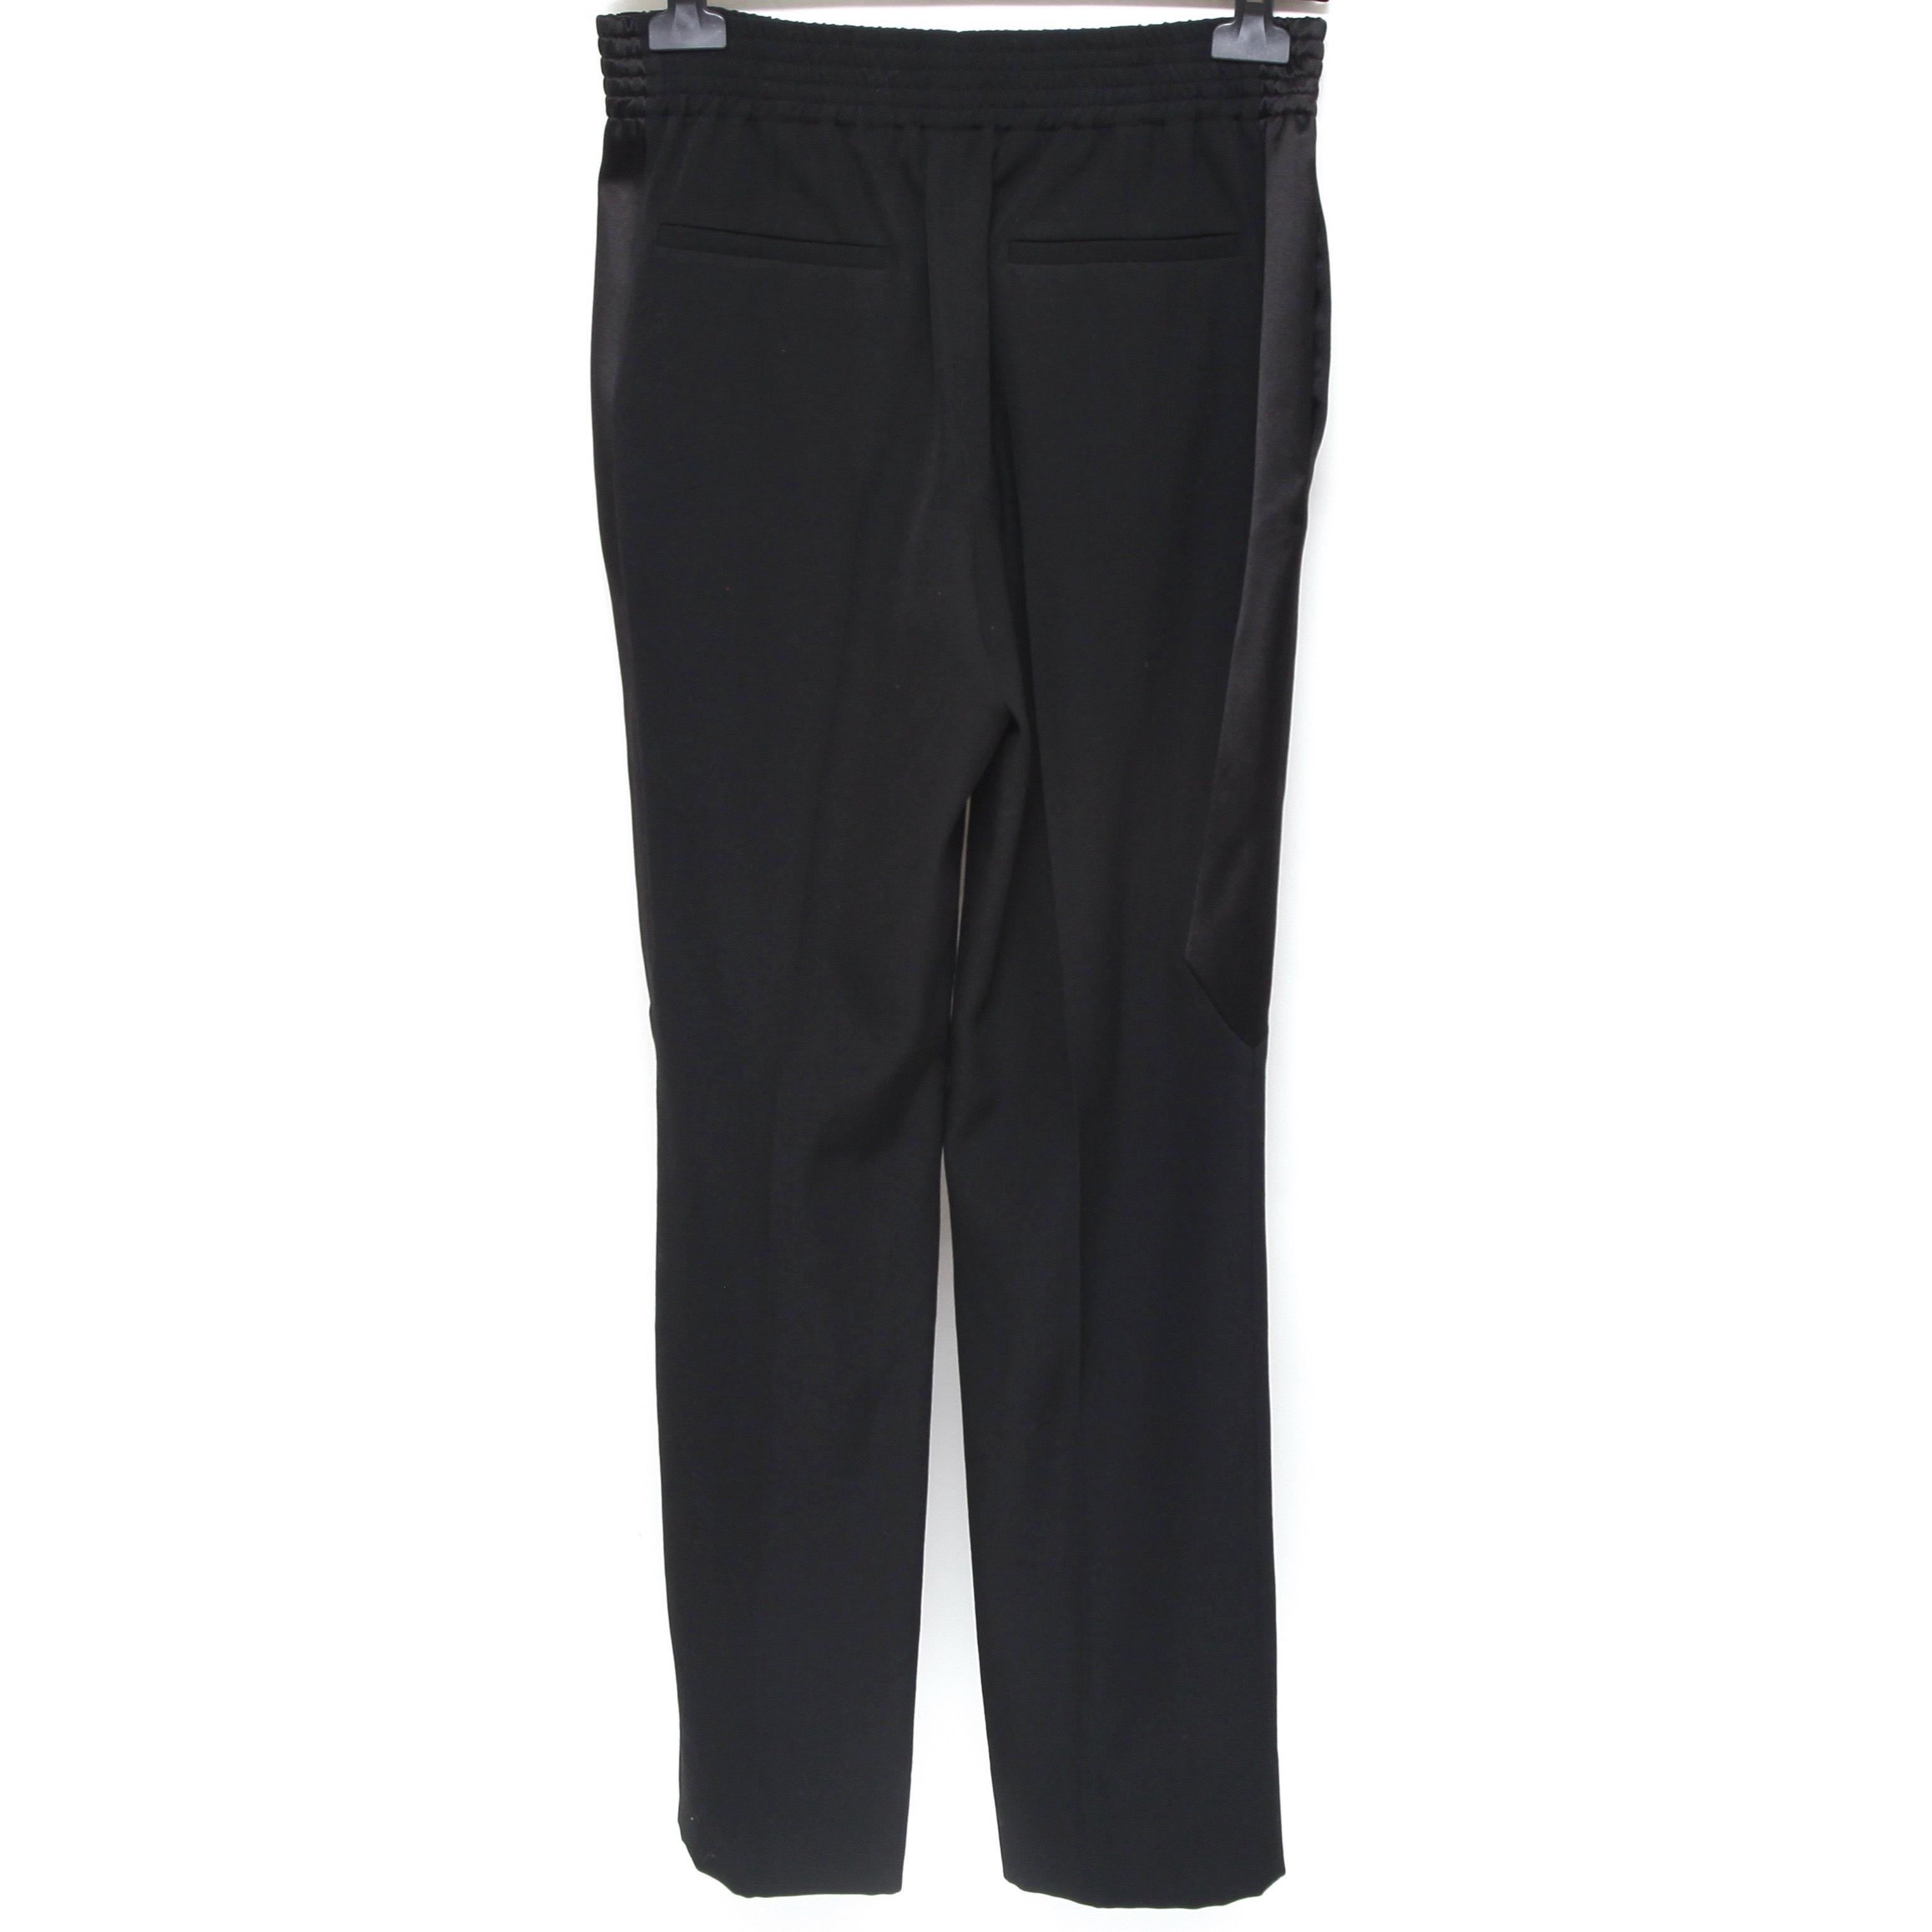 Noir GIVENCHY Pantalon noir en laine à panneaux latéraux avec poches élastiques, Taille 34, Neuf avec étiquette